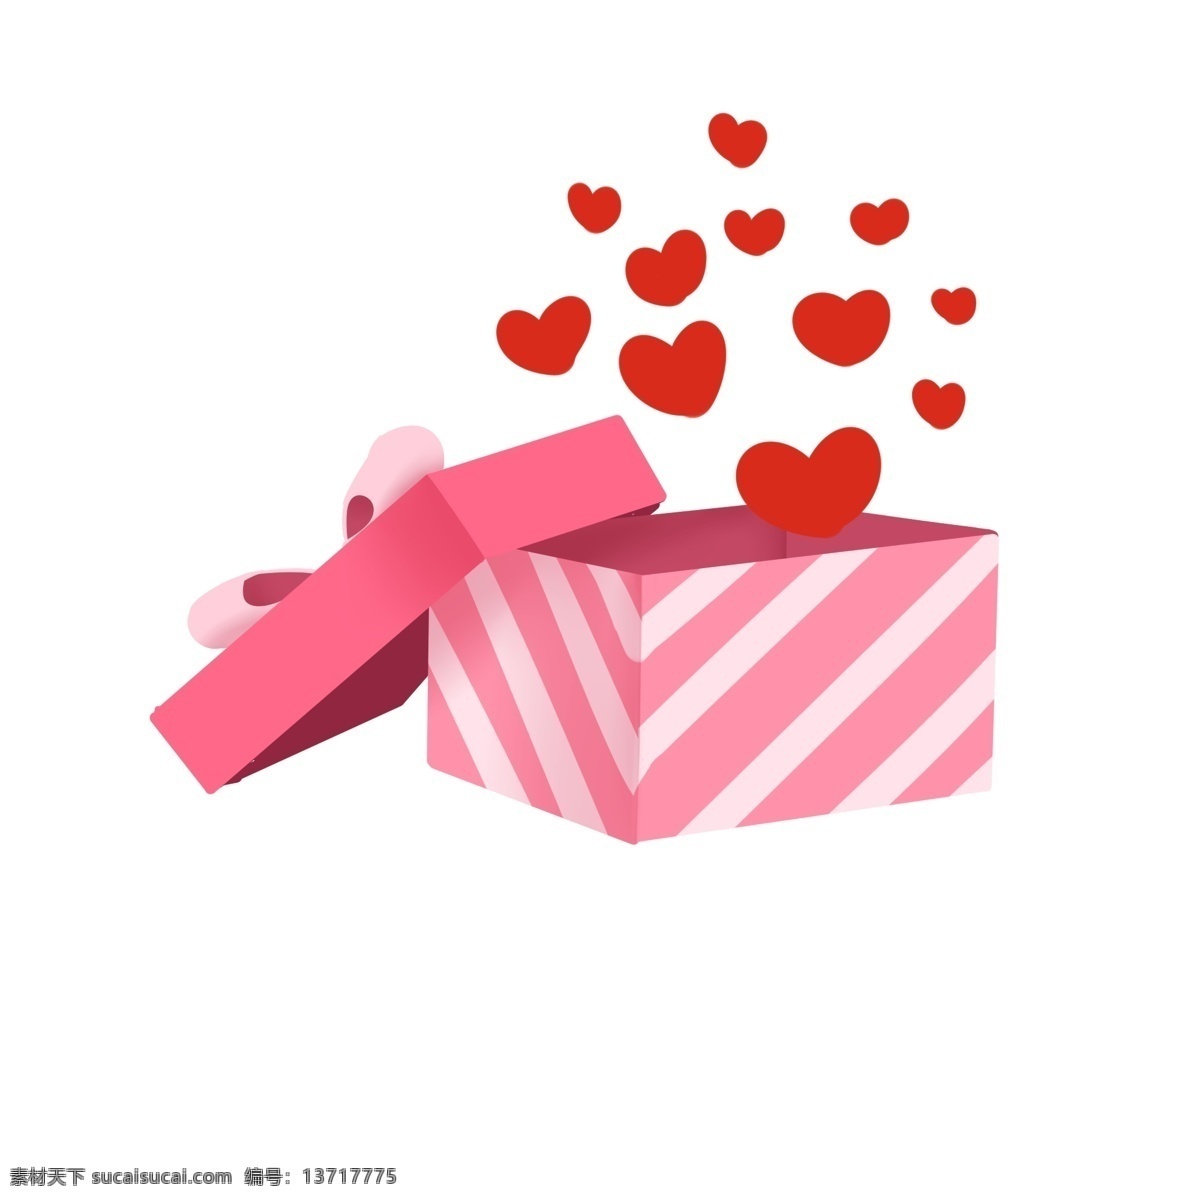 情人节 爱心 礼物 插画 情人节快乐 情人节礼物 粉色礼物盒 红色的爱心 红心 爱心礼物插画 盒装爱心 飘起的爱心